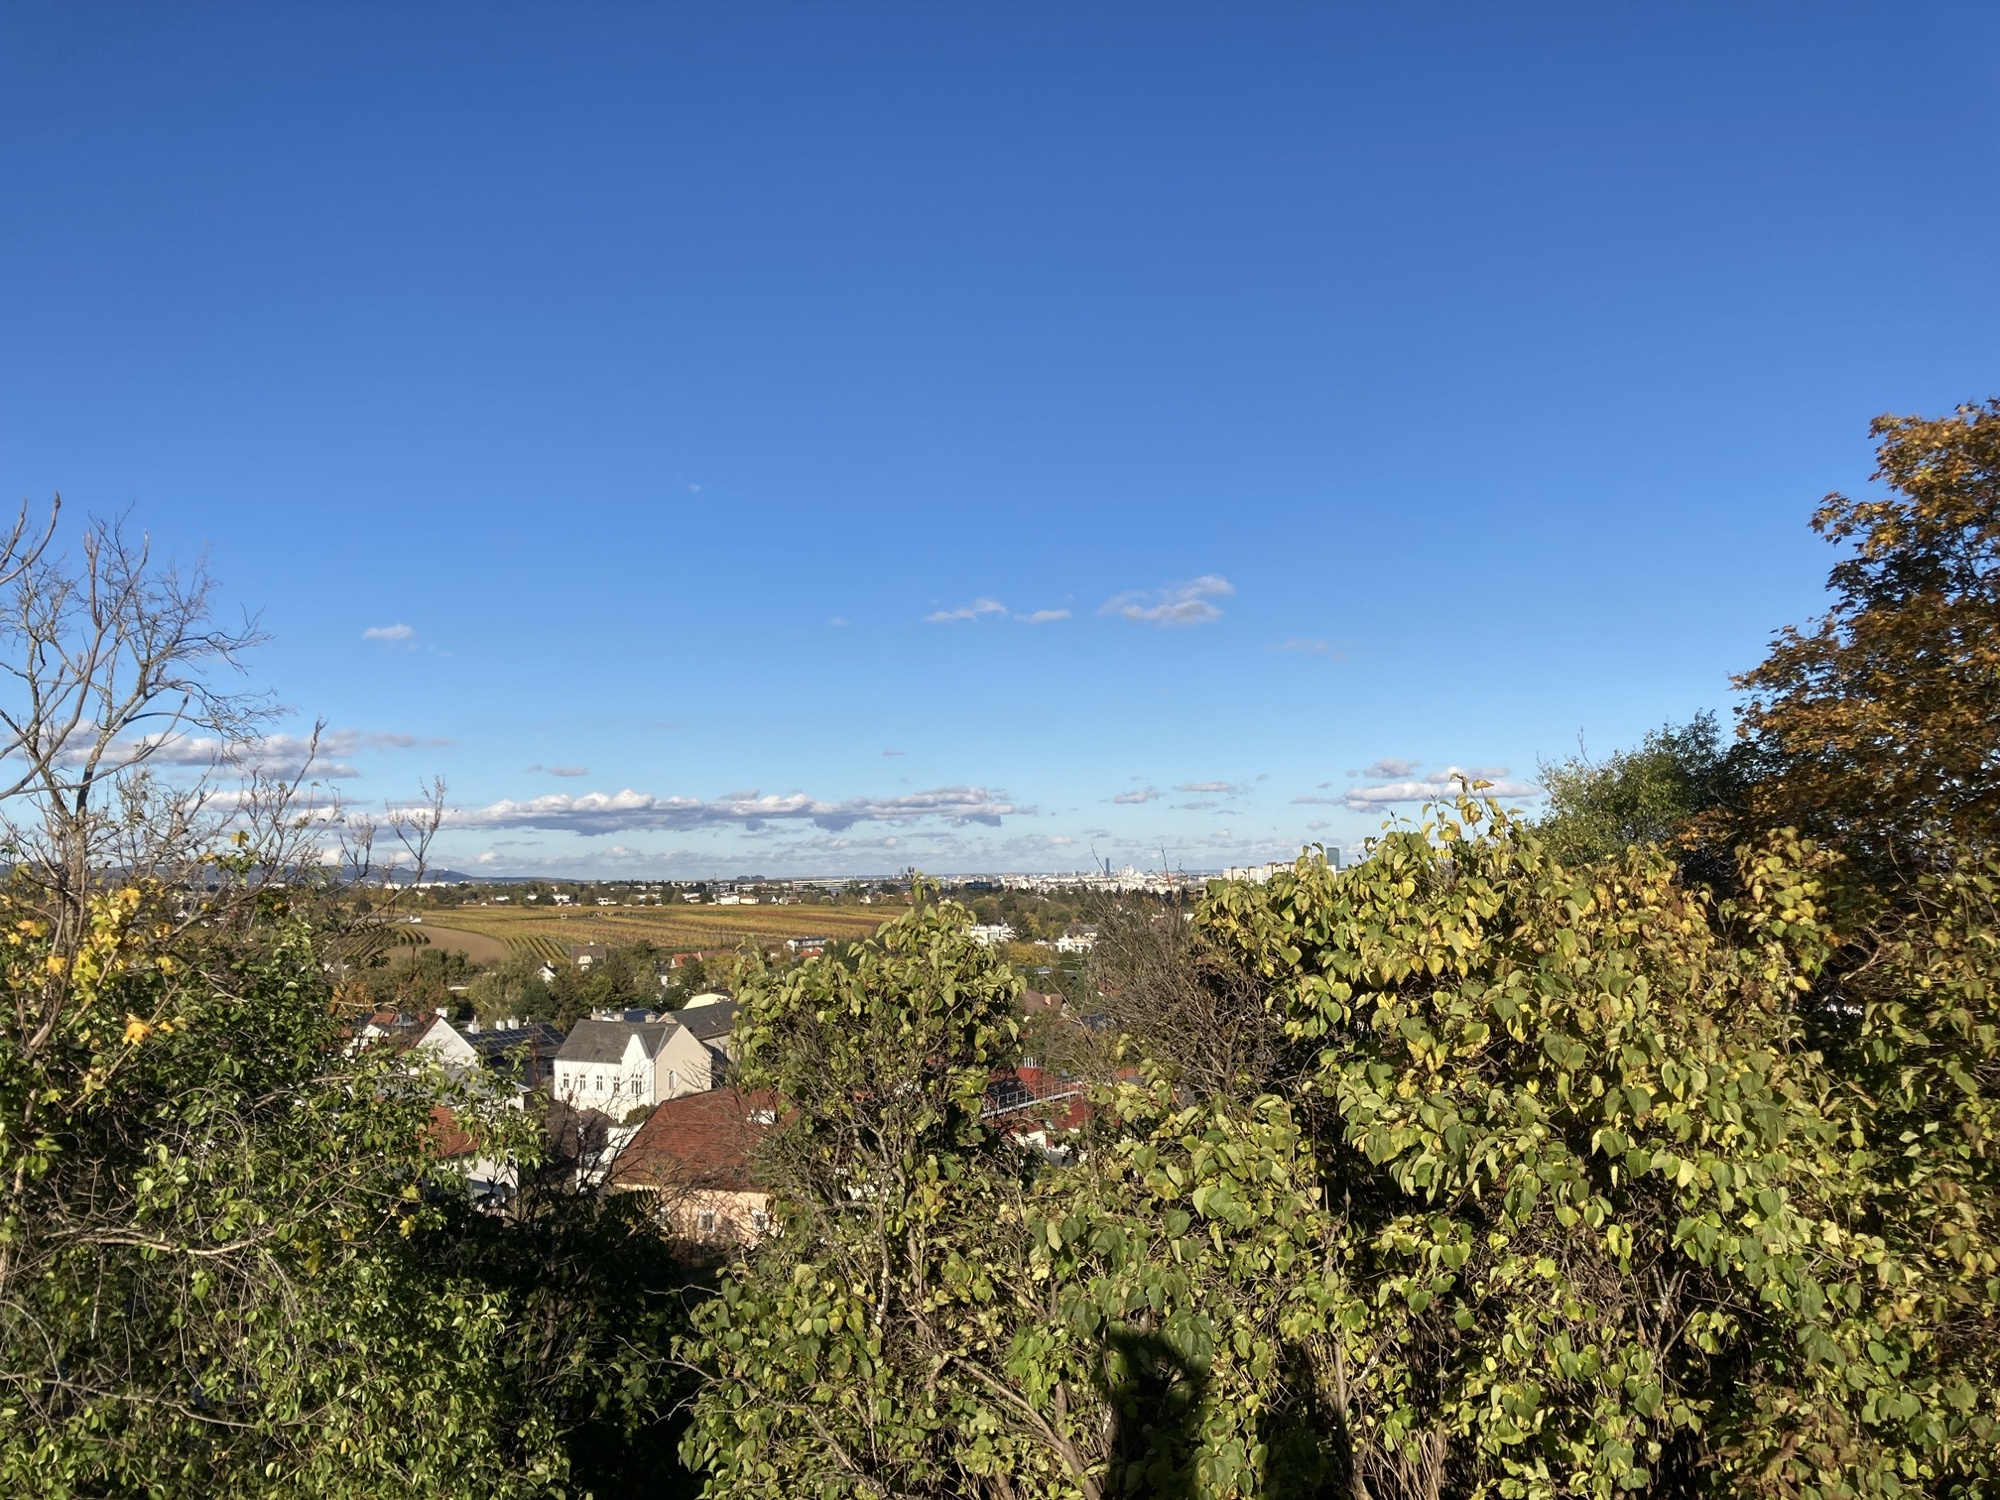 Ausblick Richtung Lainer Tiergarten von einem Hügel in Perchtoldsdorf, viel blauer Himmel, tief liegende Wolken, grüne Sträucher im Vordergrund